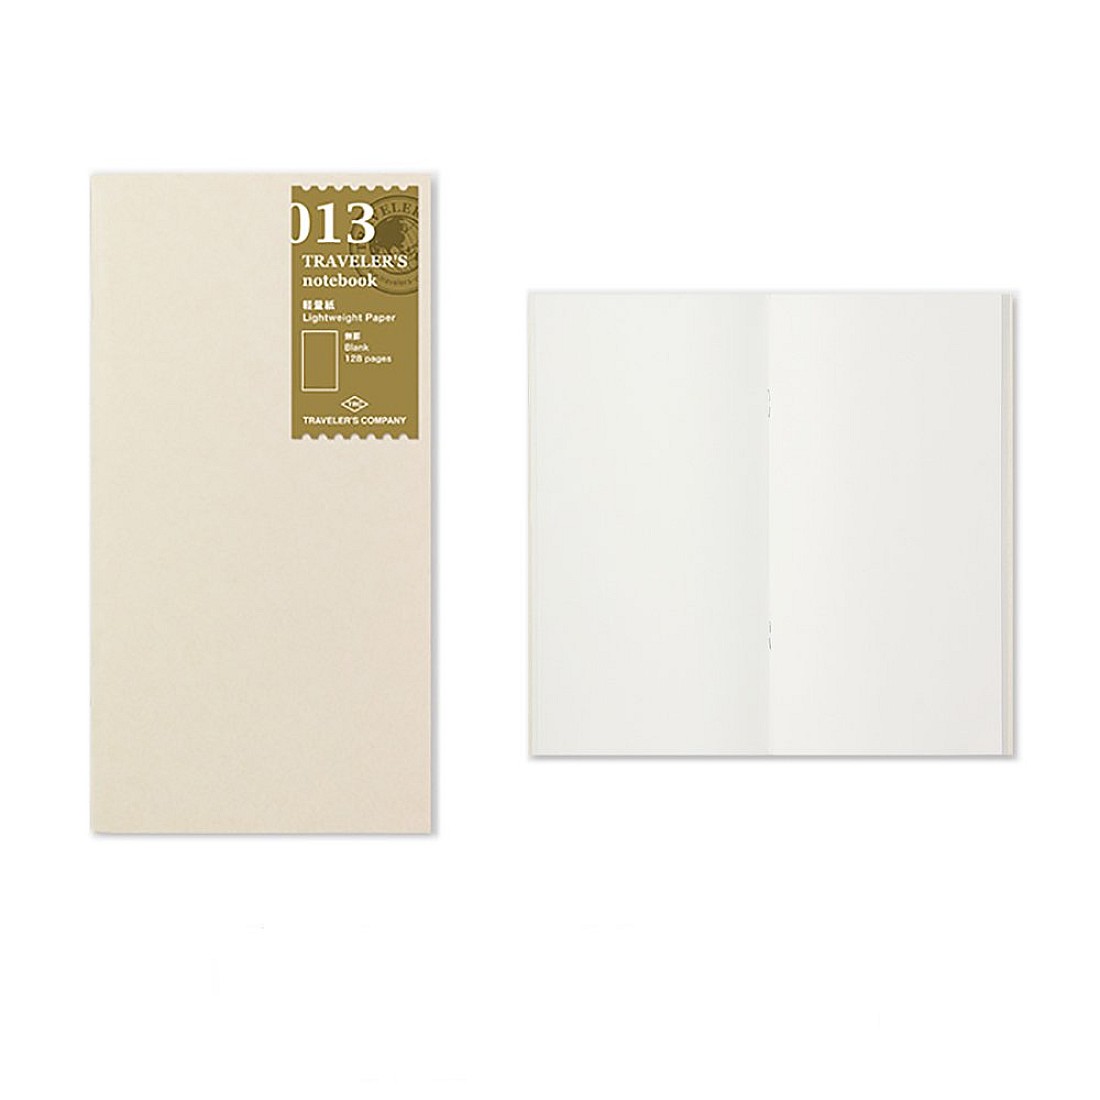 Traveler's Company Refill Regular 013 Light Weight Paper Notebook